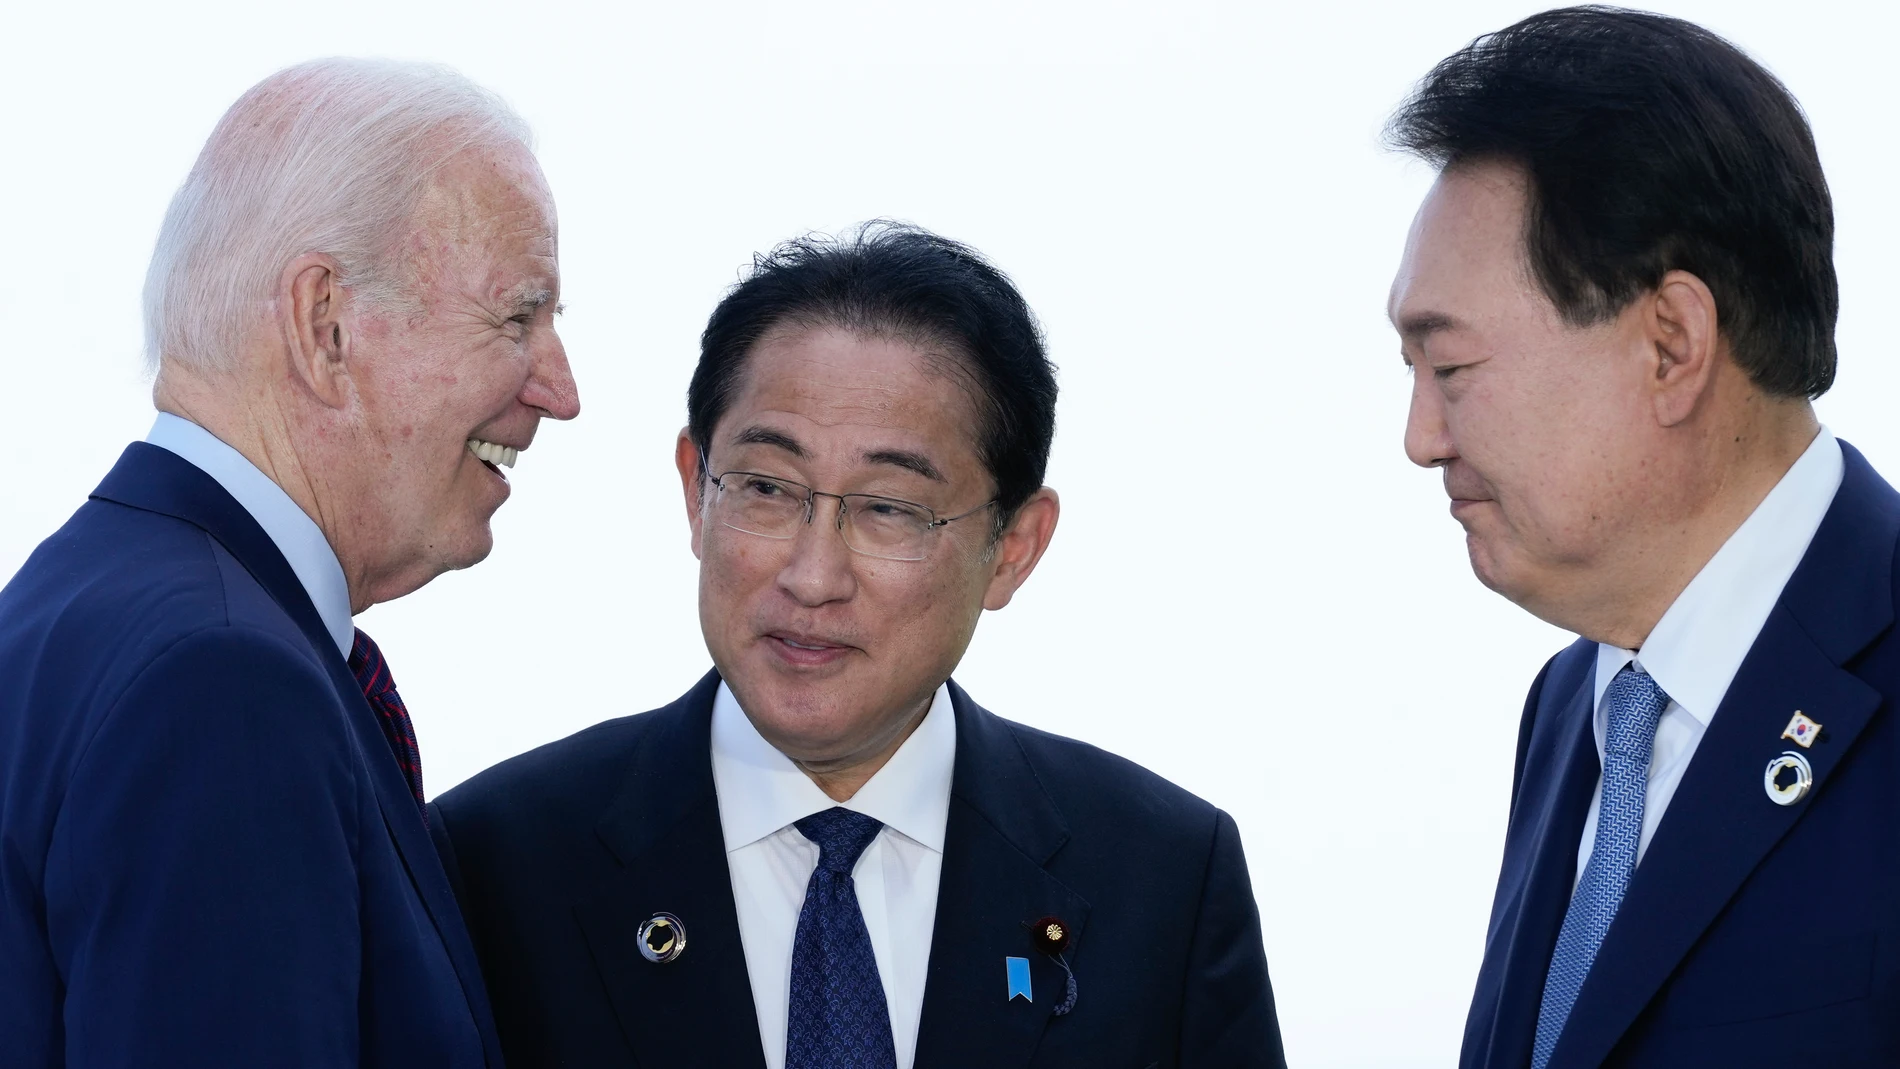 El presidente Joe Biden, a la izquierda, habla con el primer ministro de Japón, Fumio Kishida, y el presidente de Corea del Sur, Yoon Suk Yeol, a la derecha, antes de una reunión trilateral al margen de la Cumbre del G7 en Hiroshima, Japón, domingo 21 de mayo